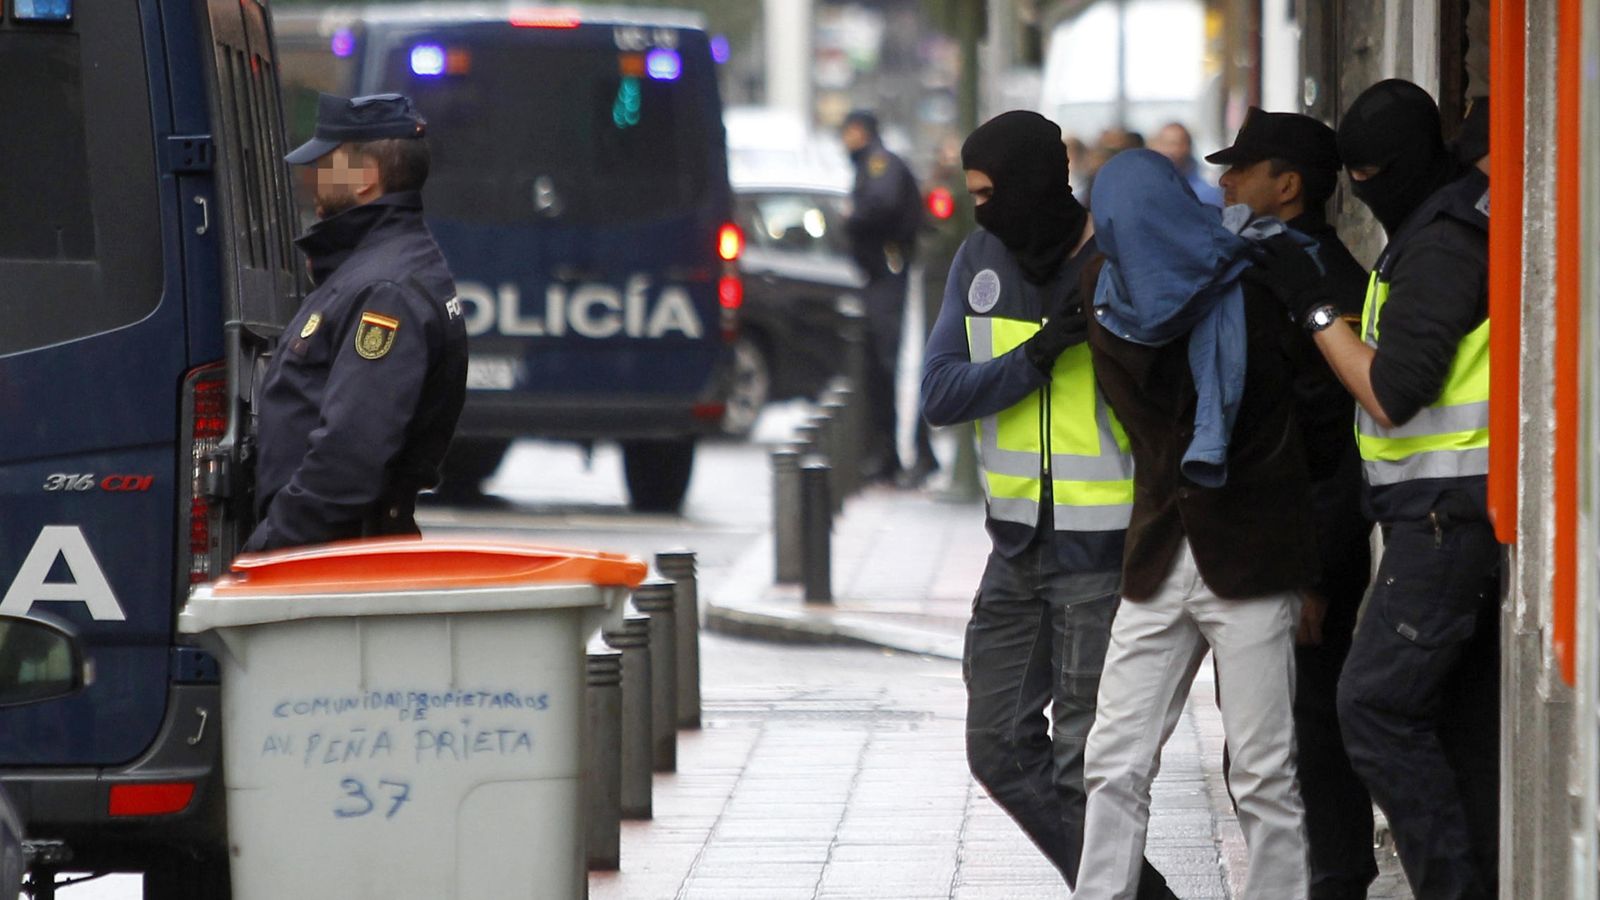 Foto: Dos efectivos de la Policía acompañan a la persona detenida hoy en el madrileño barrio de Vallecas. (EFE)